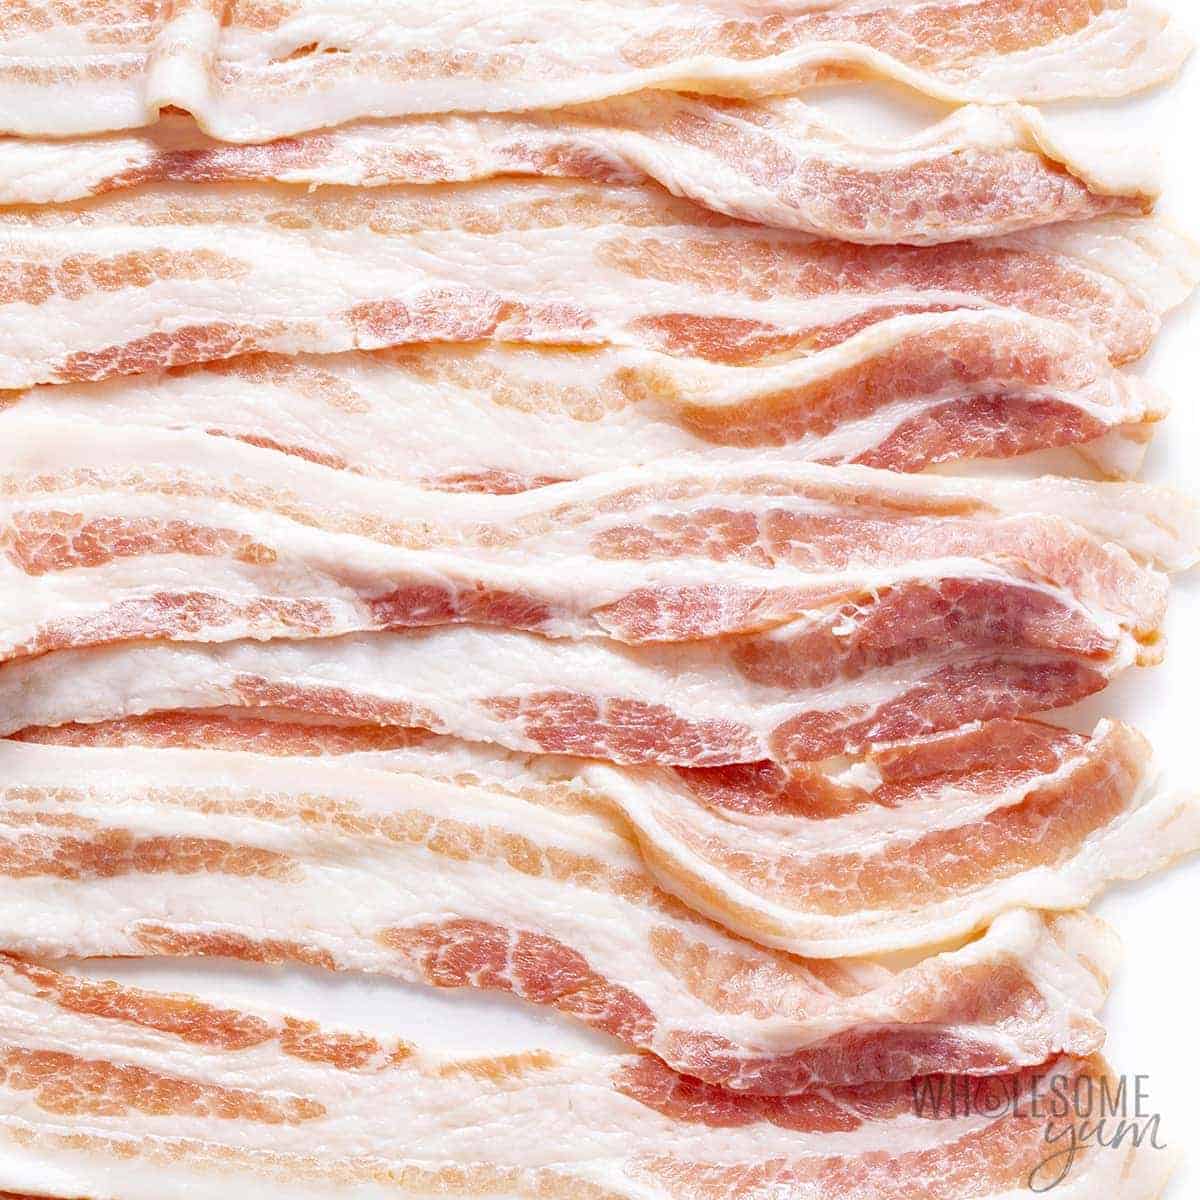 Raw bacon strips